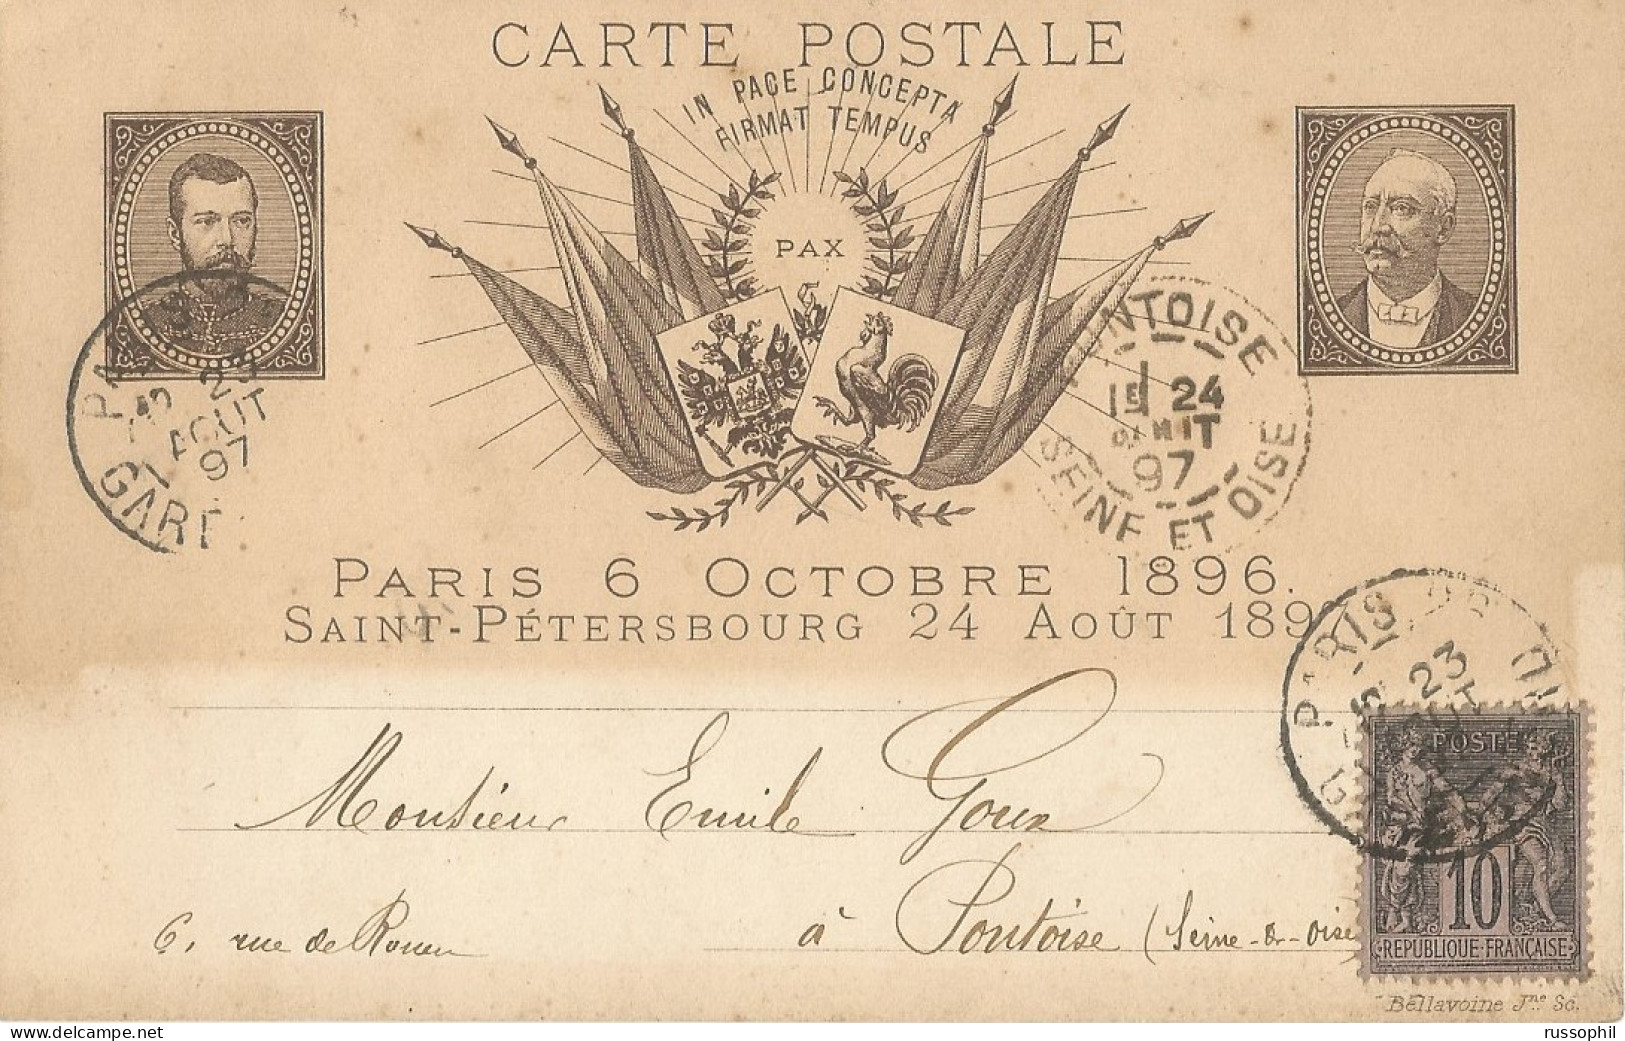 FRANCO RUSSIAN ALLIANCE - PARIS 6 OCTOBRE 1896 SAINT PETERSBOURG 24 AOUT 1897 - ED BELLAVOINE - 1897 - Eventi